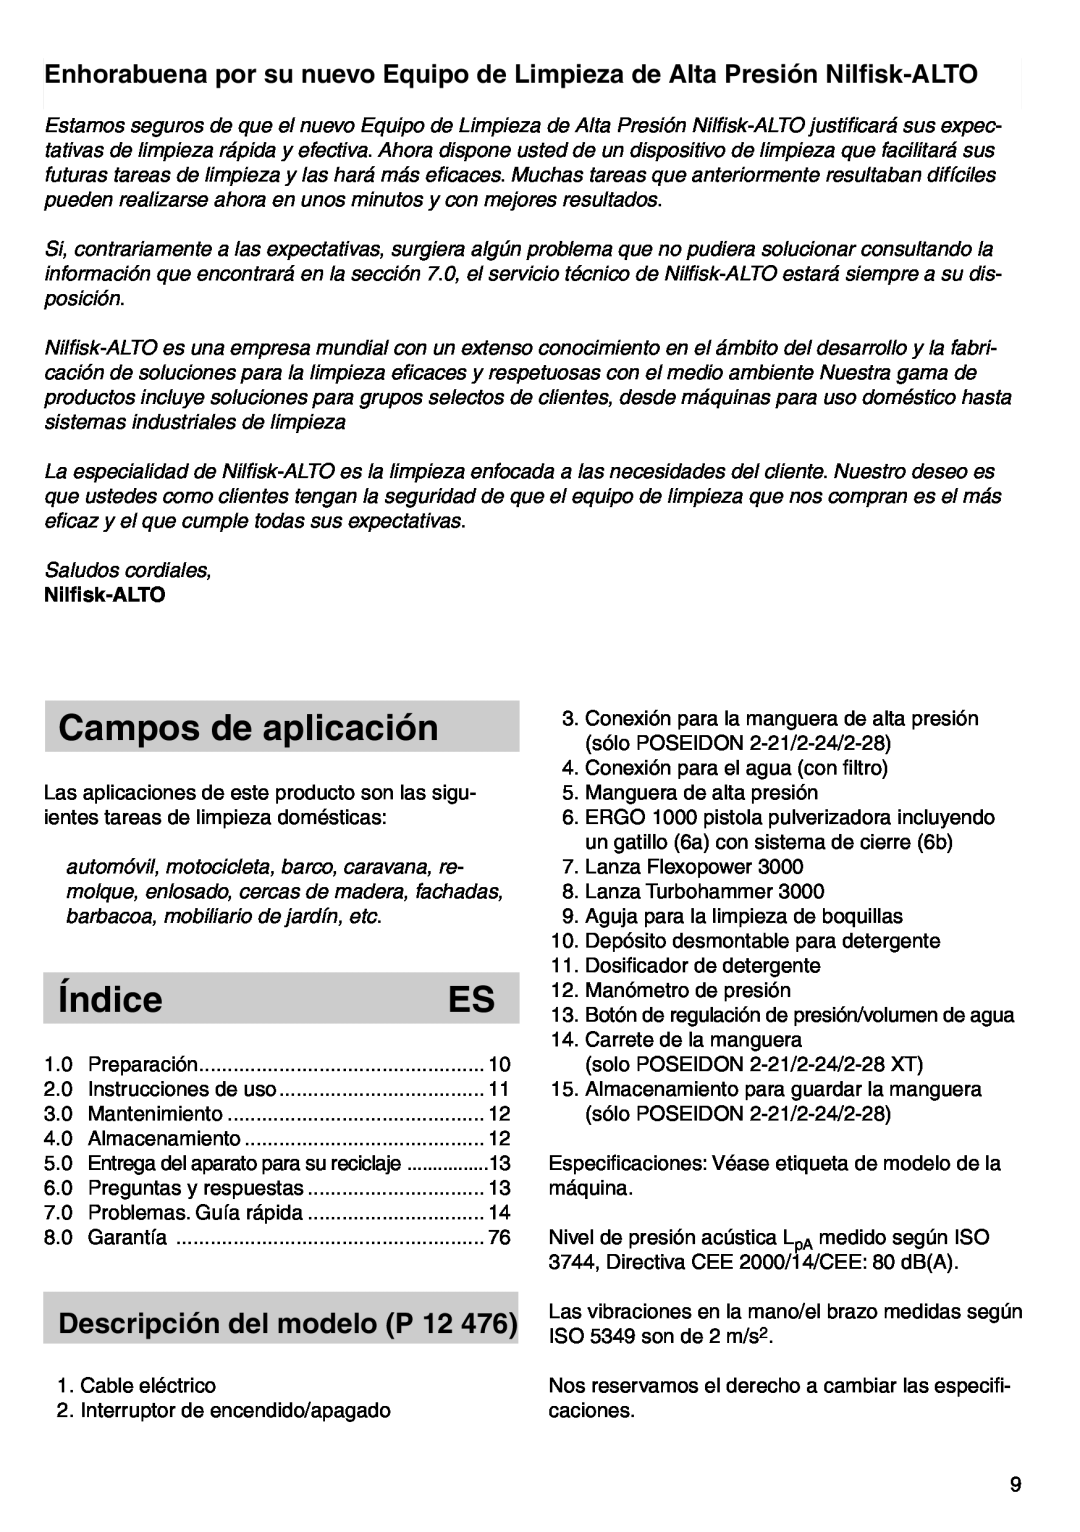 Nilfisk-ALTO POSEIDON 2-21 instruction manual Campos de aplicación, Índice, Nilﬁsk-ALTO, Descripción del modelo P 